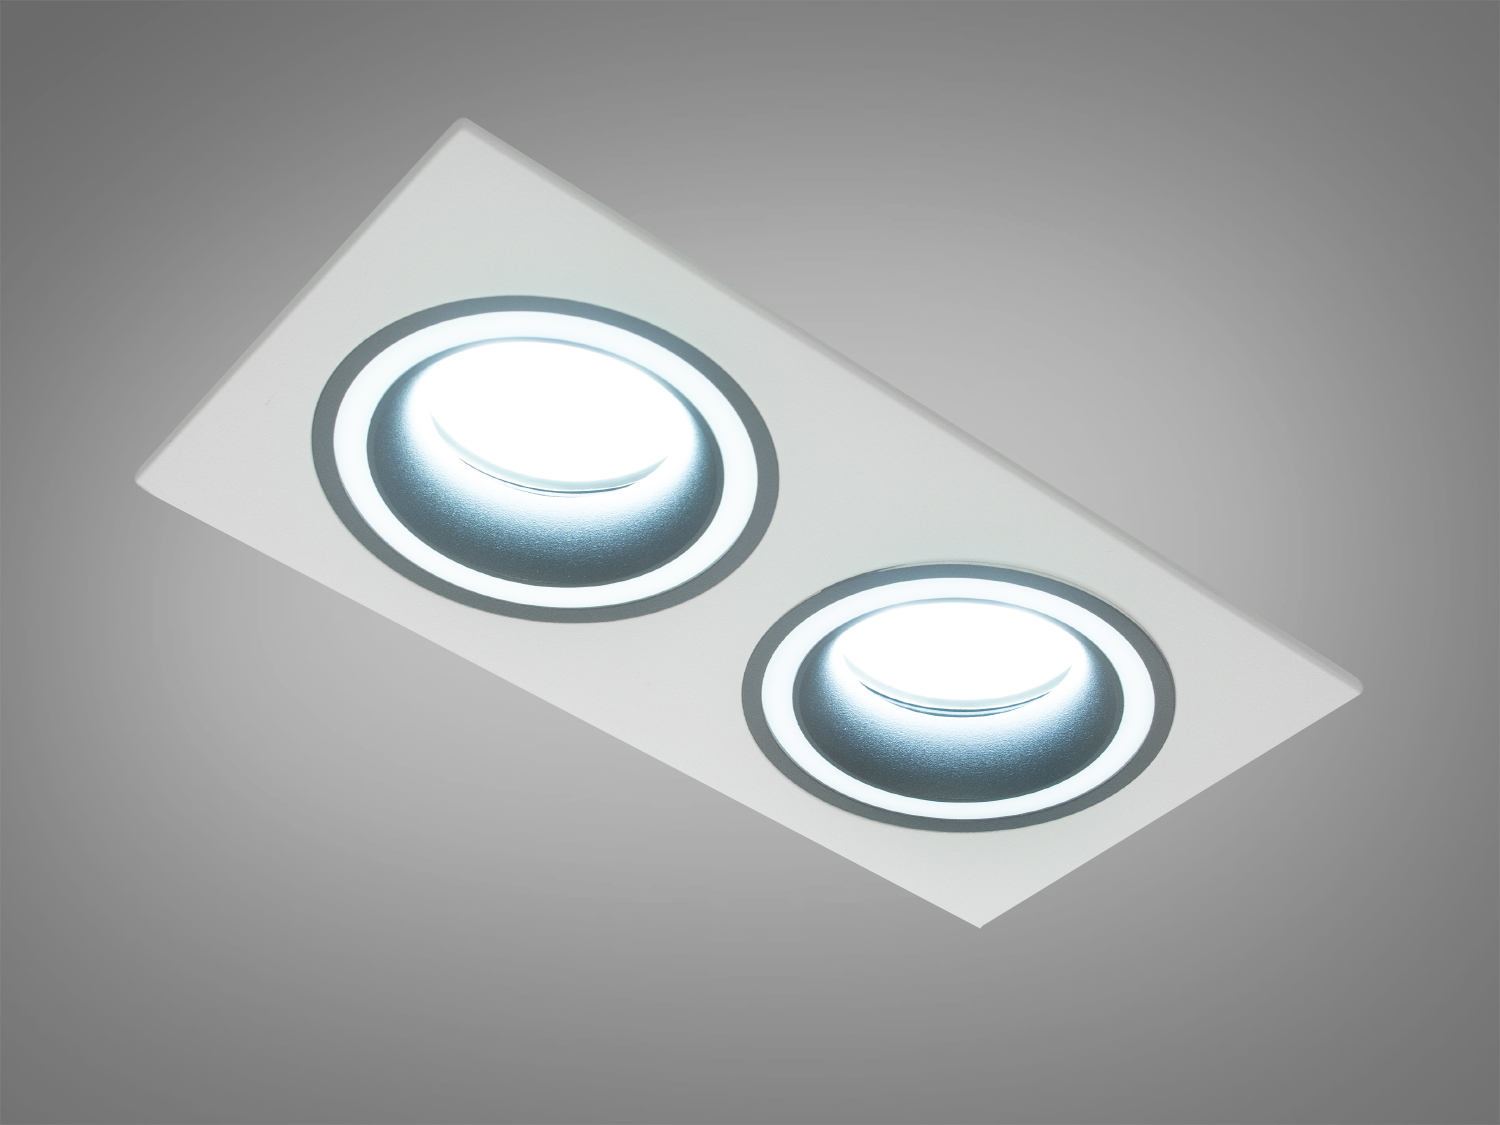 Цей здвоєний точковий світильник виготовлений з алюмінію представляє собою втілення стилю та функціональності, які пропонує нова серія від ТМ 